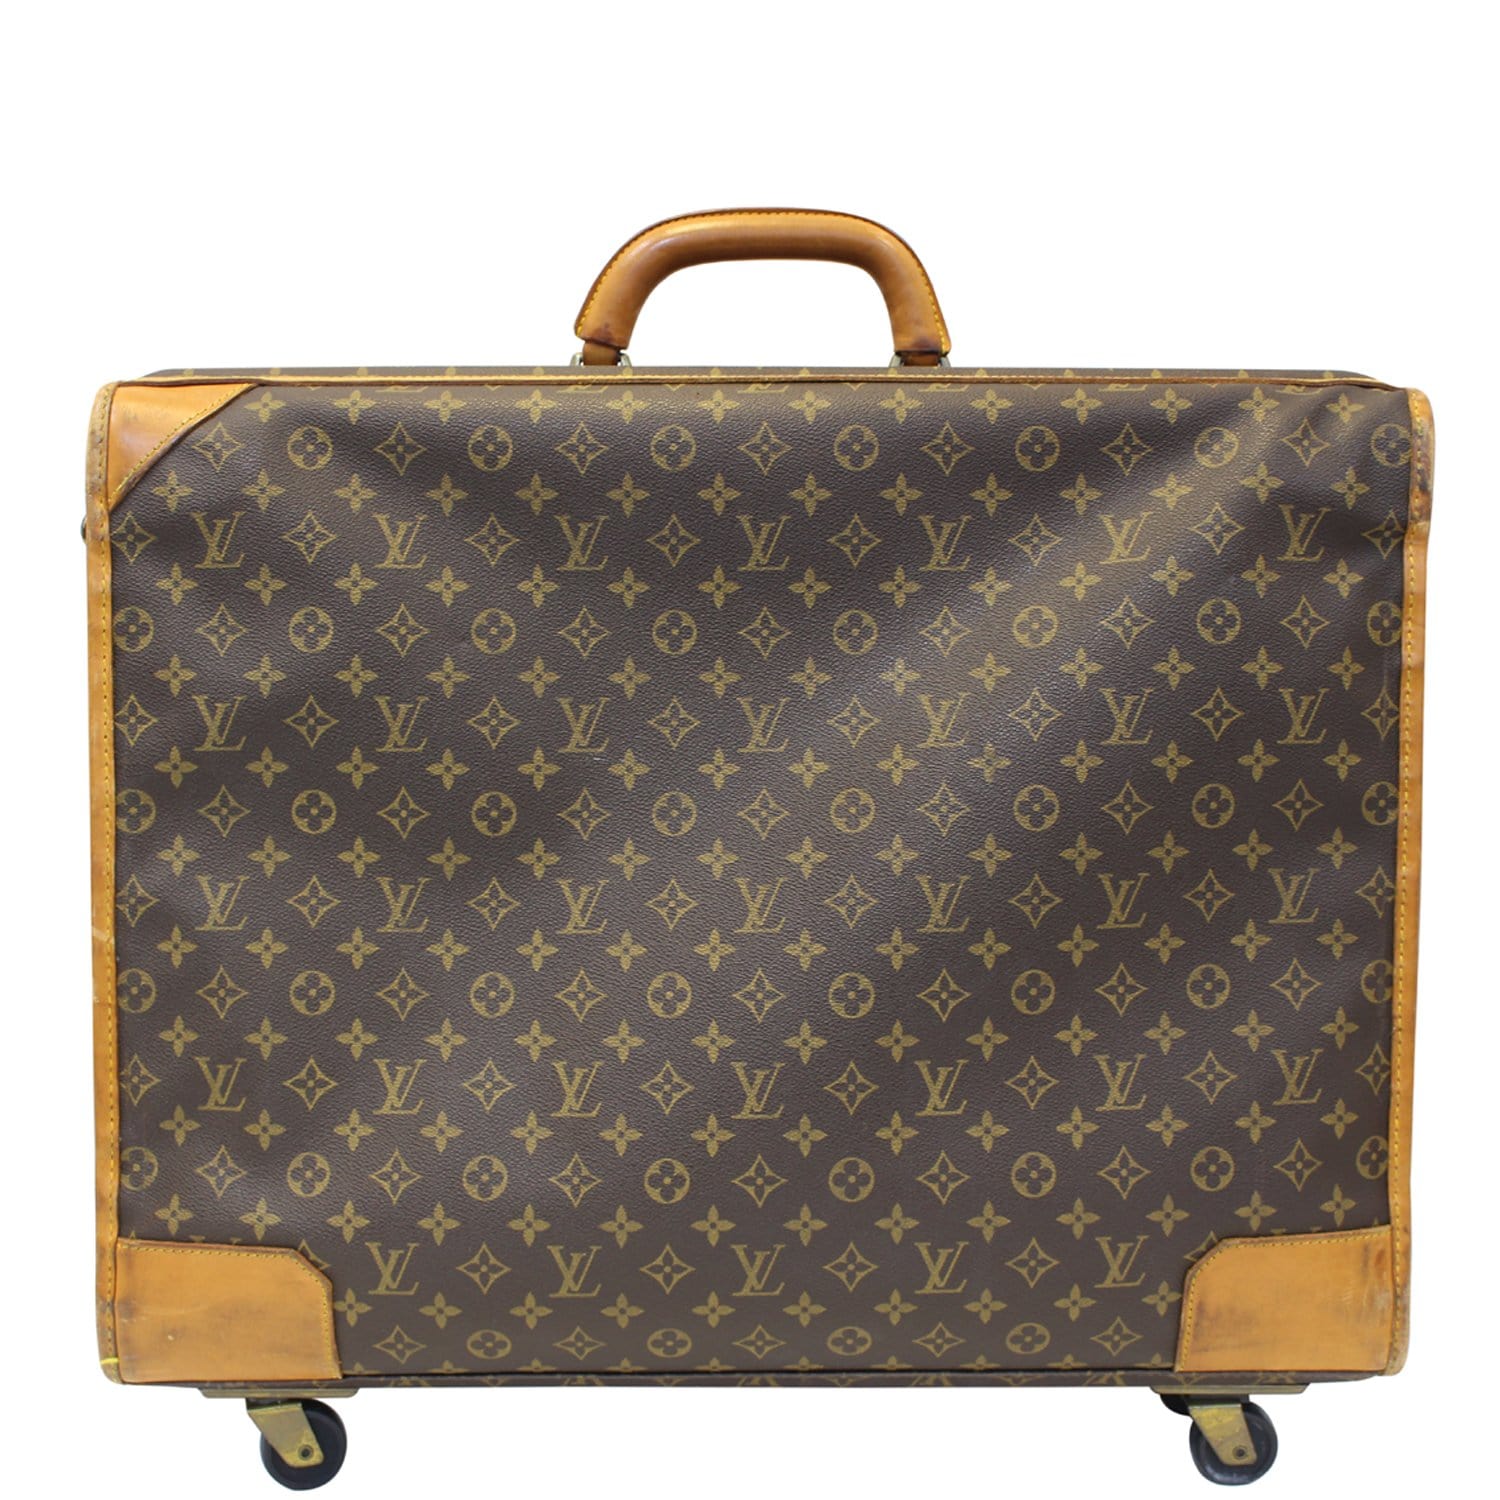 Vintage Louis Vuitton Signature Suitcase